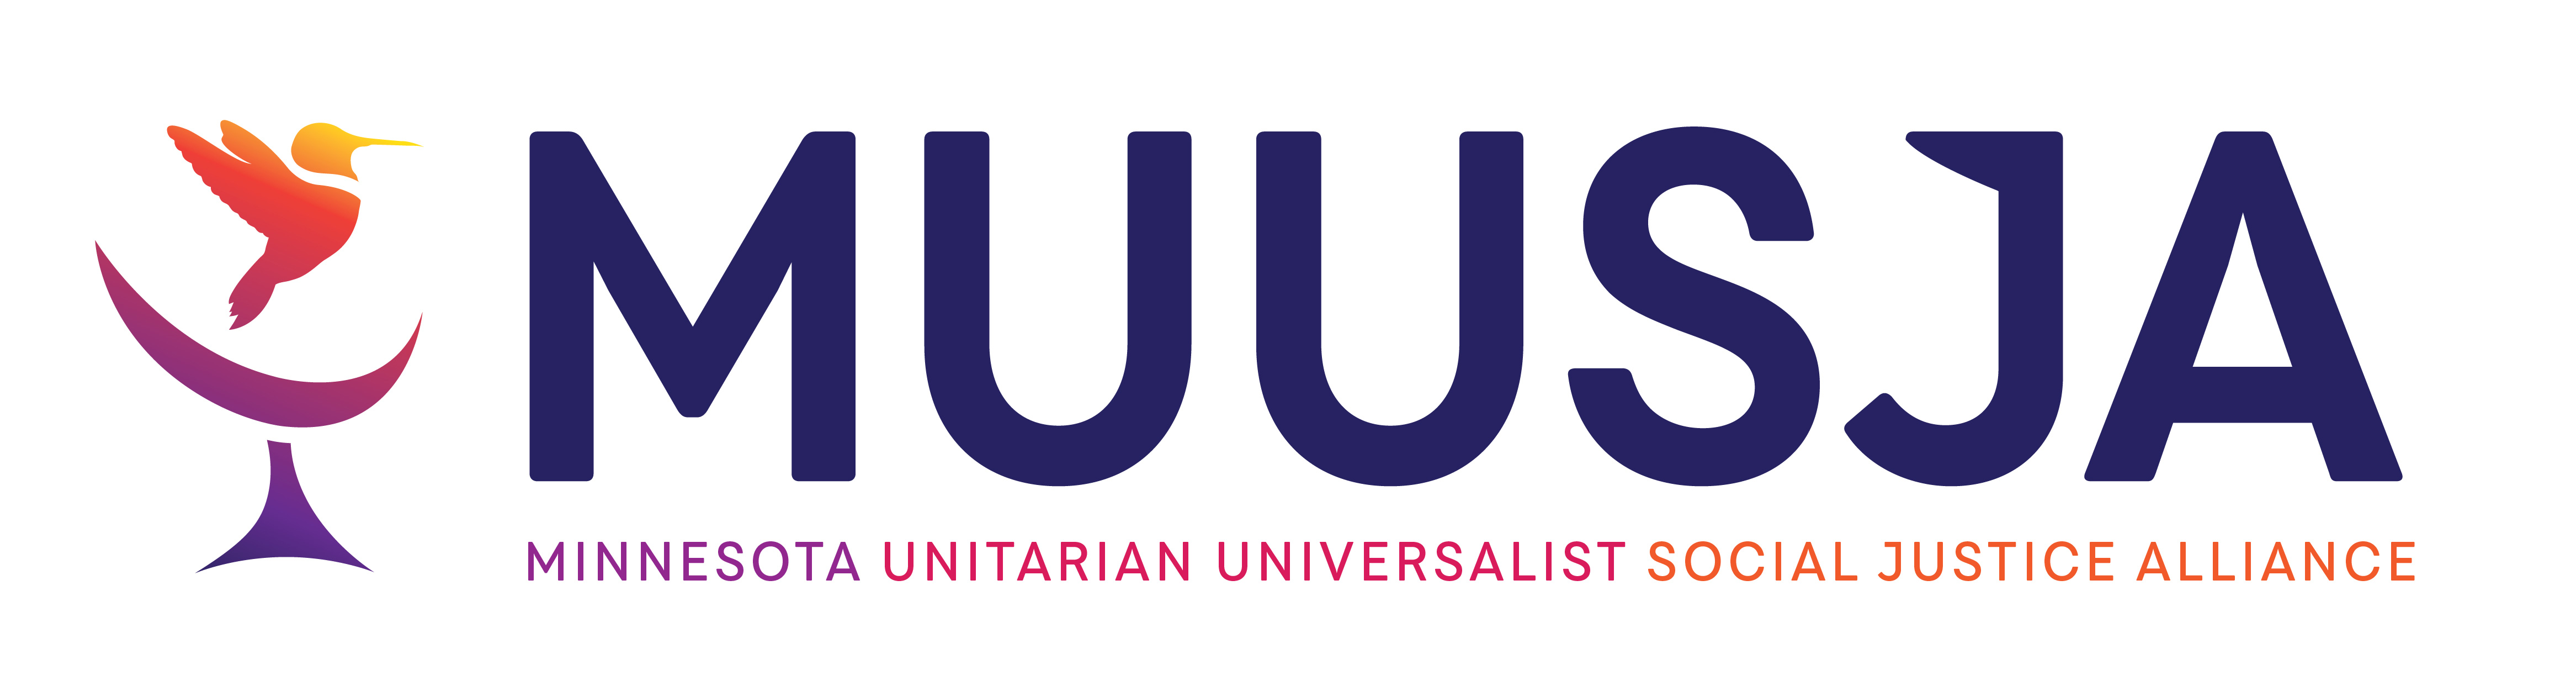 MUUSJA - Minnesota Unitarian Universalist Social Justice Alliance